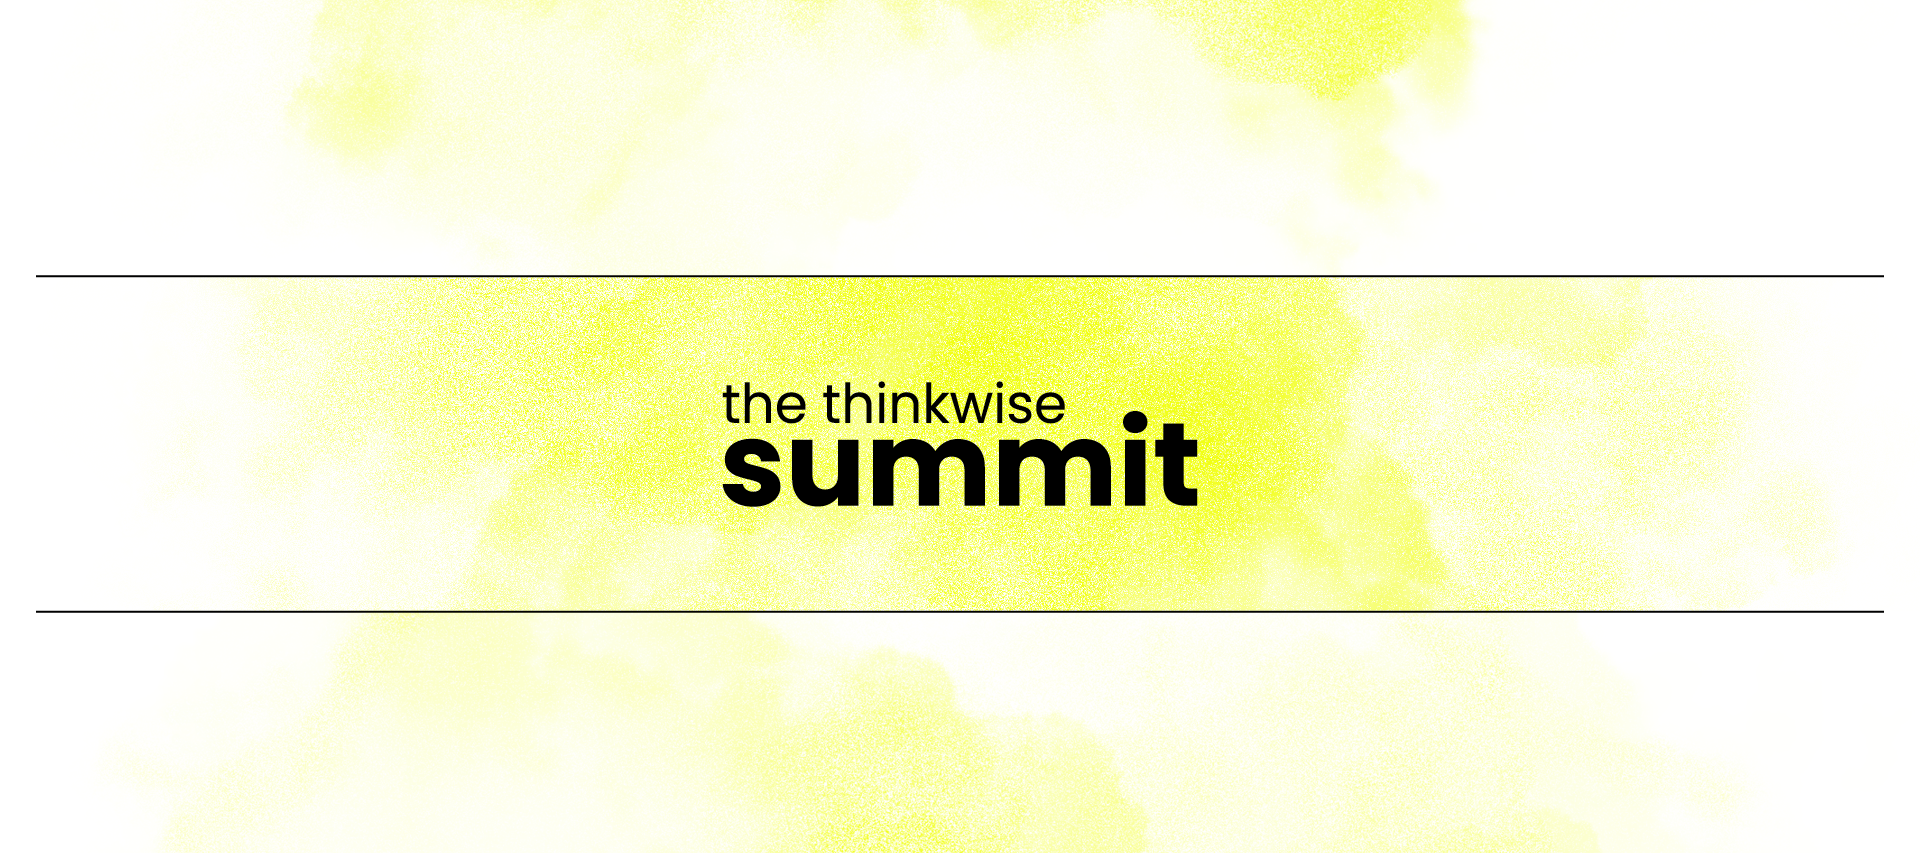 Thinkwise Summit 2023 focuses on building sustainable enterprises